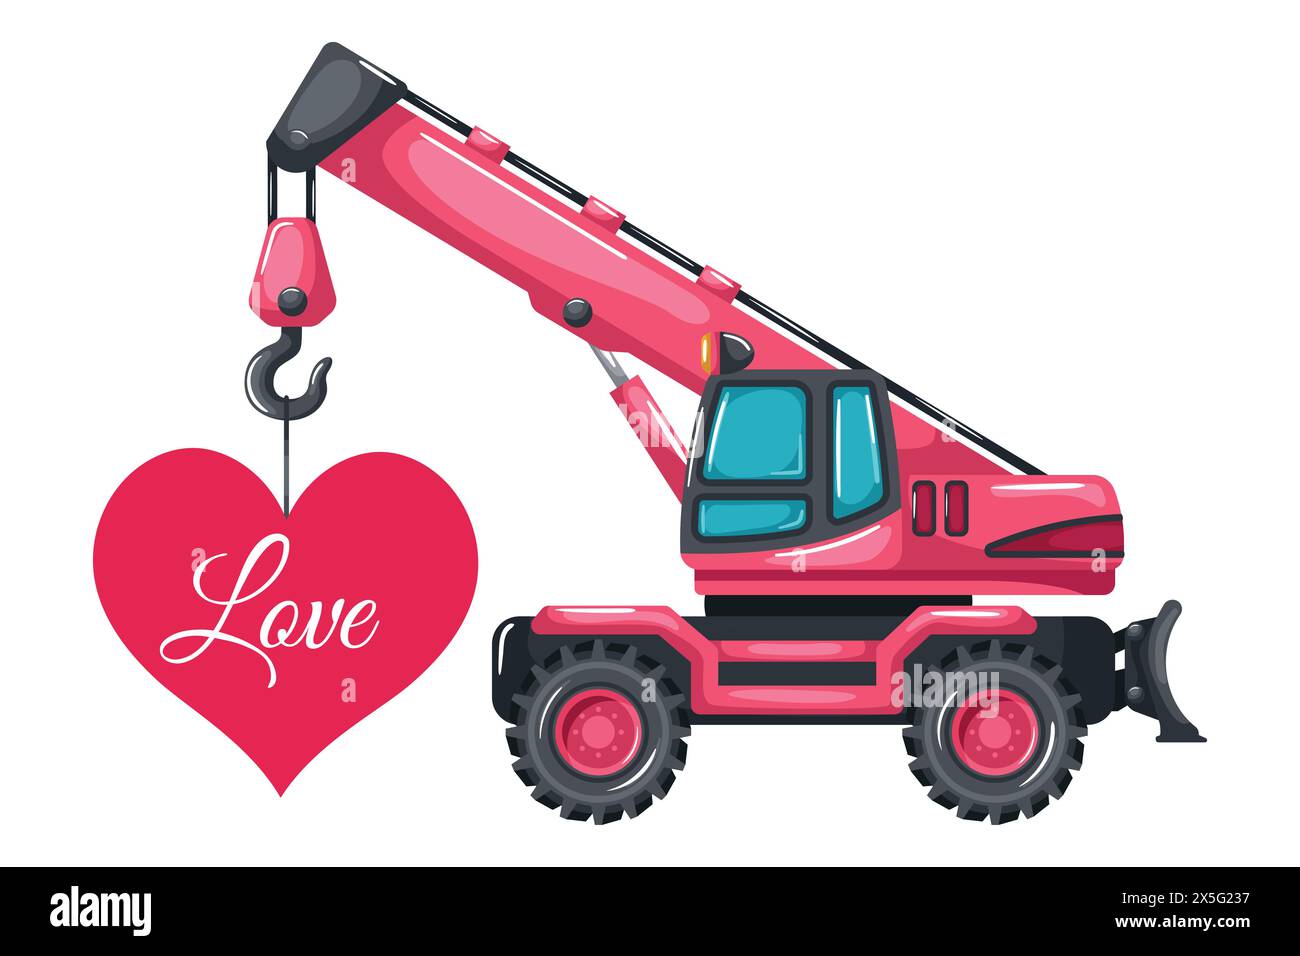 Teleskopkran auf Rädern Cartoon rosa Farbe hebt eine Herzkarte zum Valentinstag. Schwere Maschinen, die im Bau- und Bergbau eingesetzt werden Stock Vektor